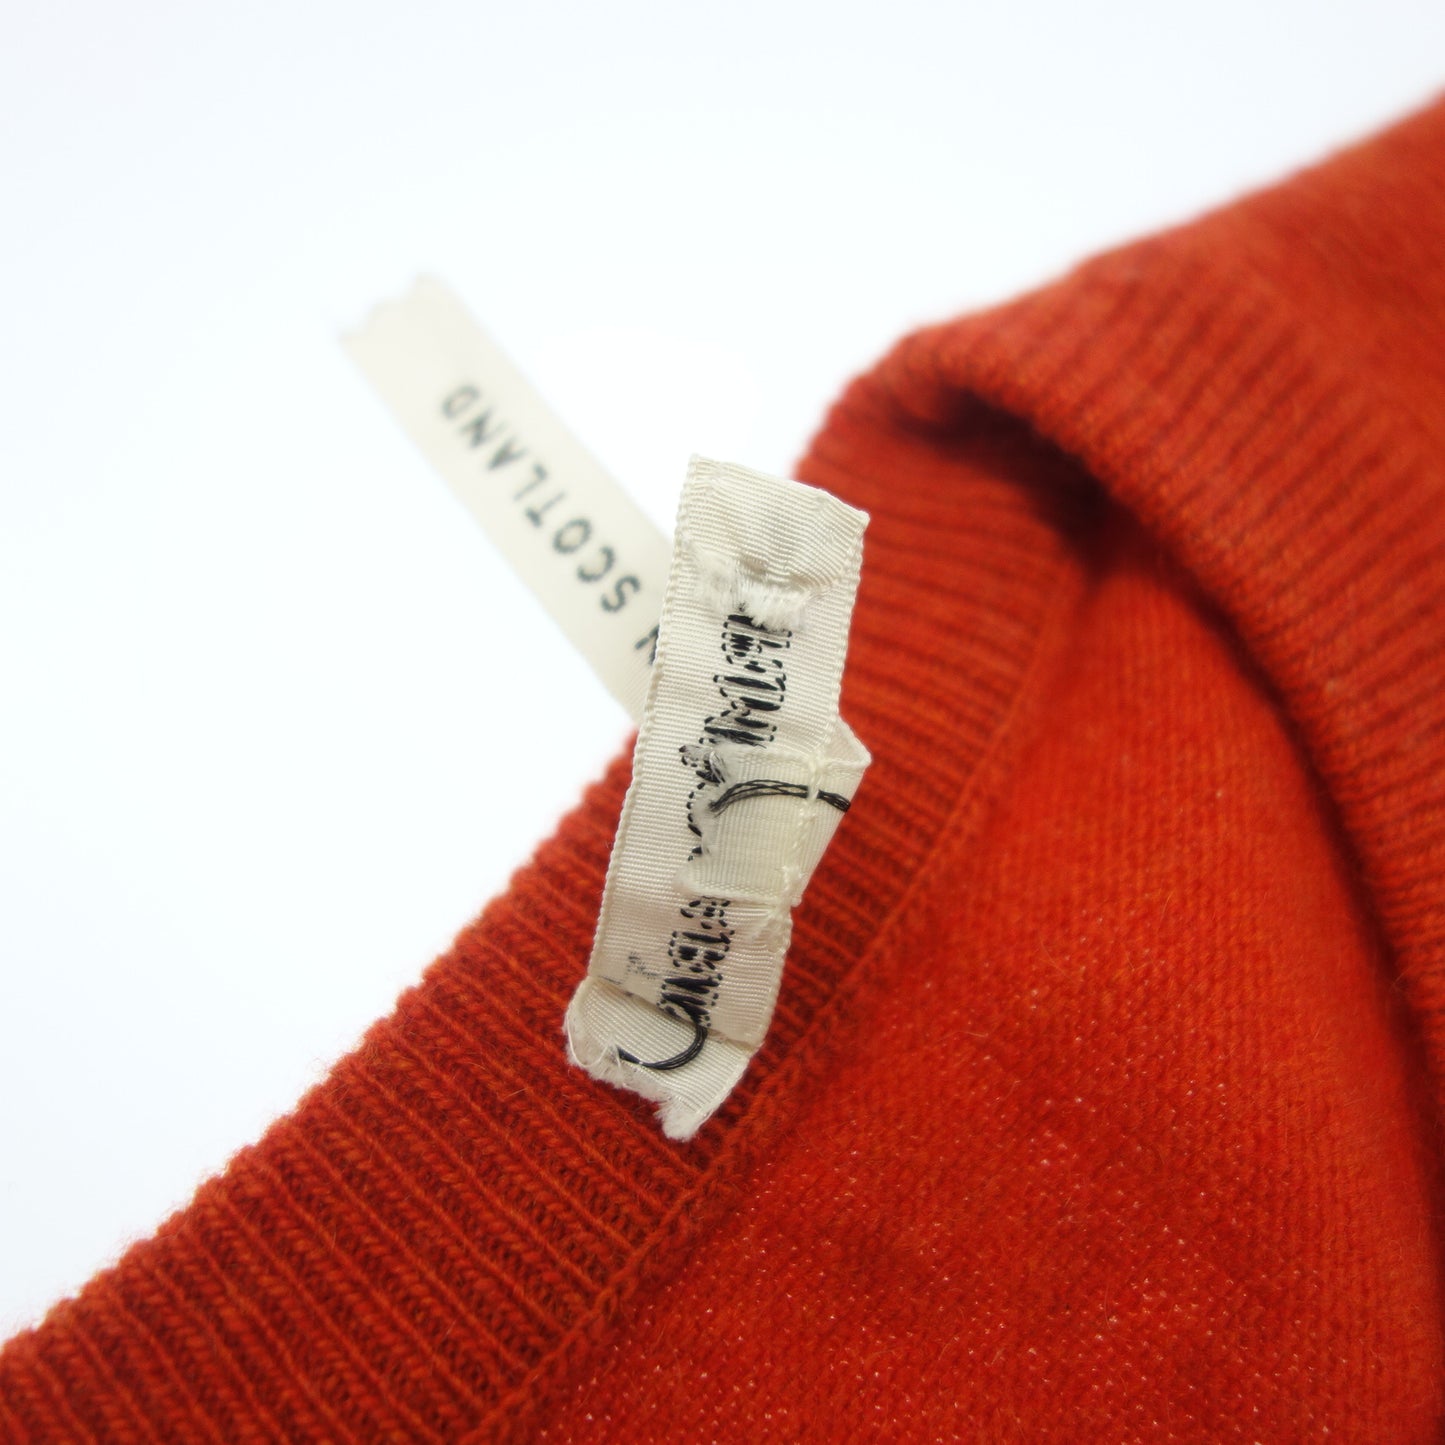 Hermes Knit Tops Margiela Period Orange Ladies SM HERMES [AFB38] [Used] 